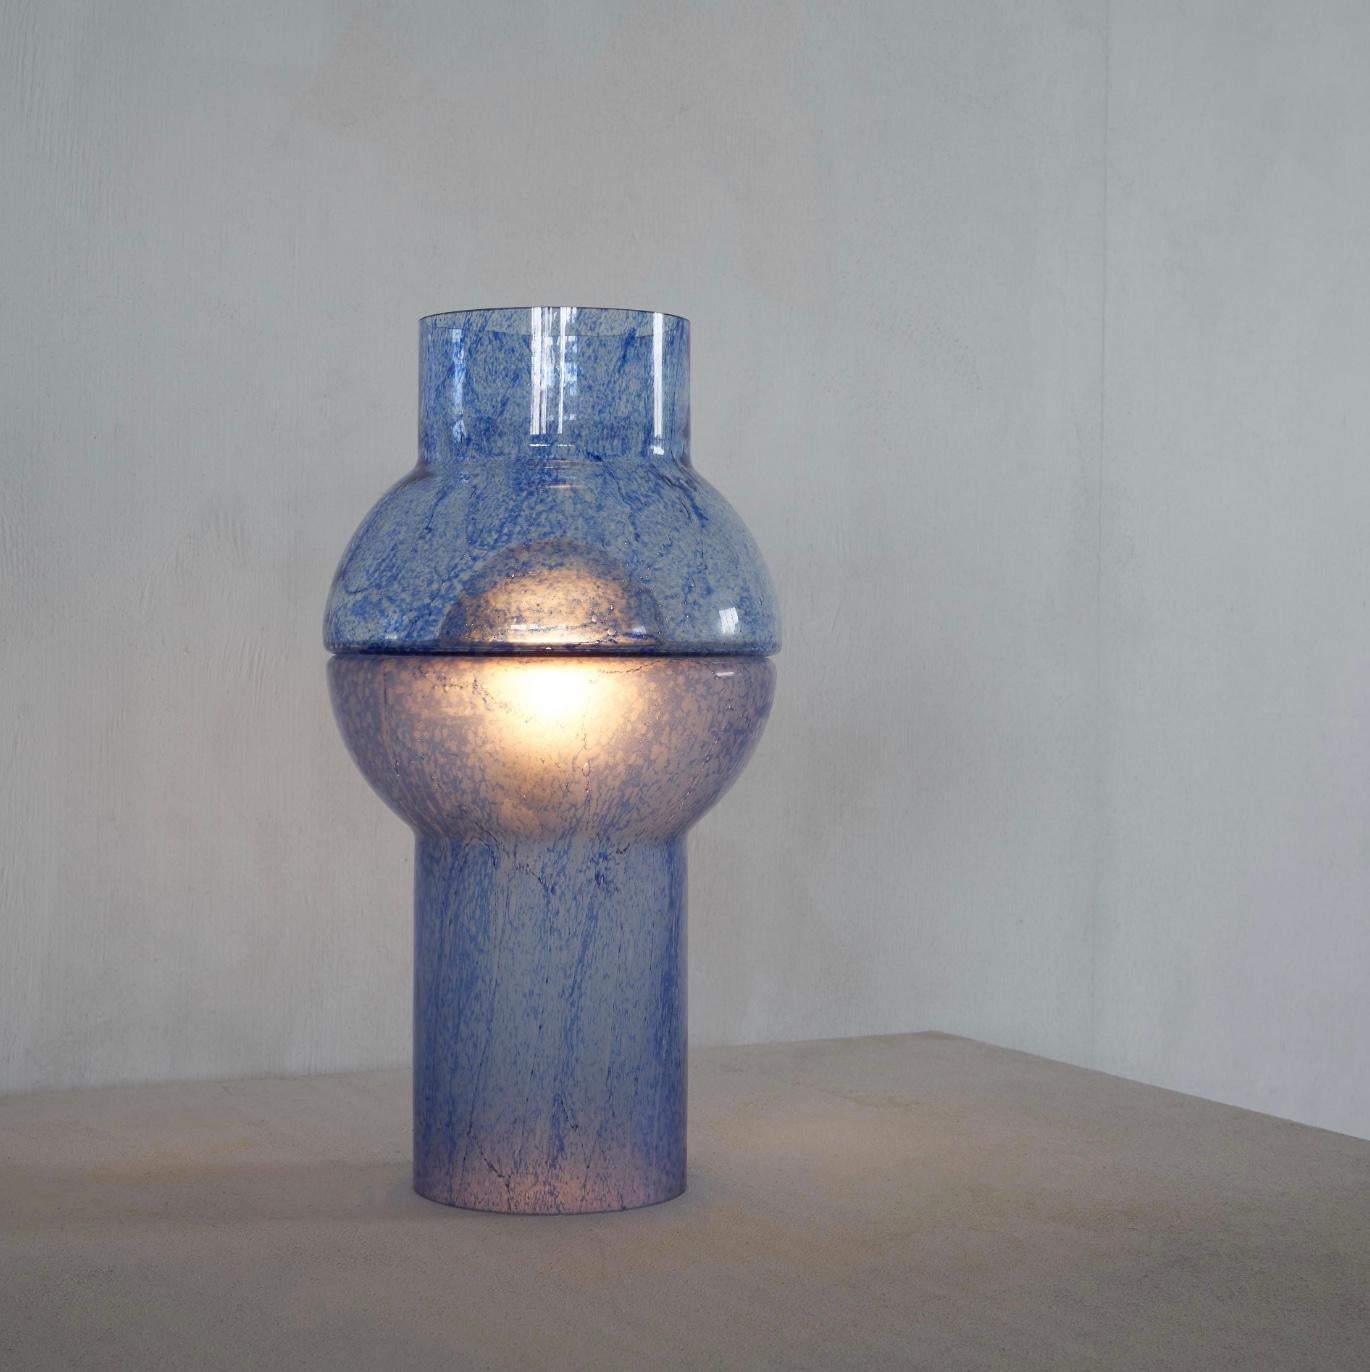 Merveilleuse lampe de table 'Pulegoso' en verre de Murano bleu, Italie, années 1970.

Très expérimentale dans sa forme et son design, cette joyeuse lampe de table sera le centre d'attention sur votre bureau ou votre crédence. L'ampoule elle-même est